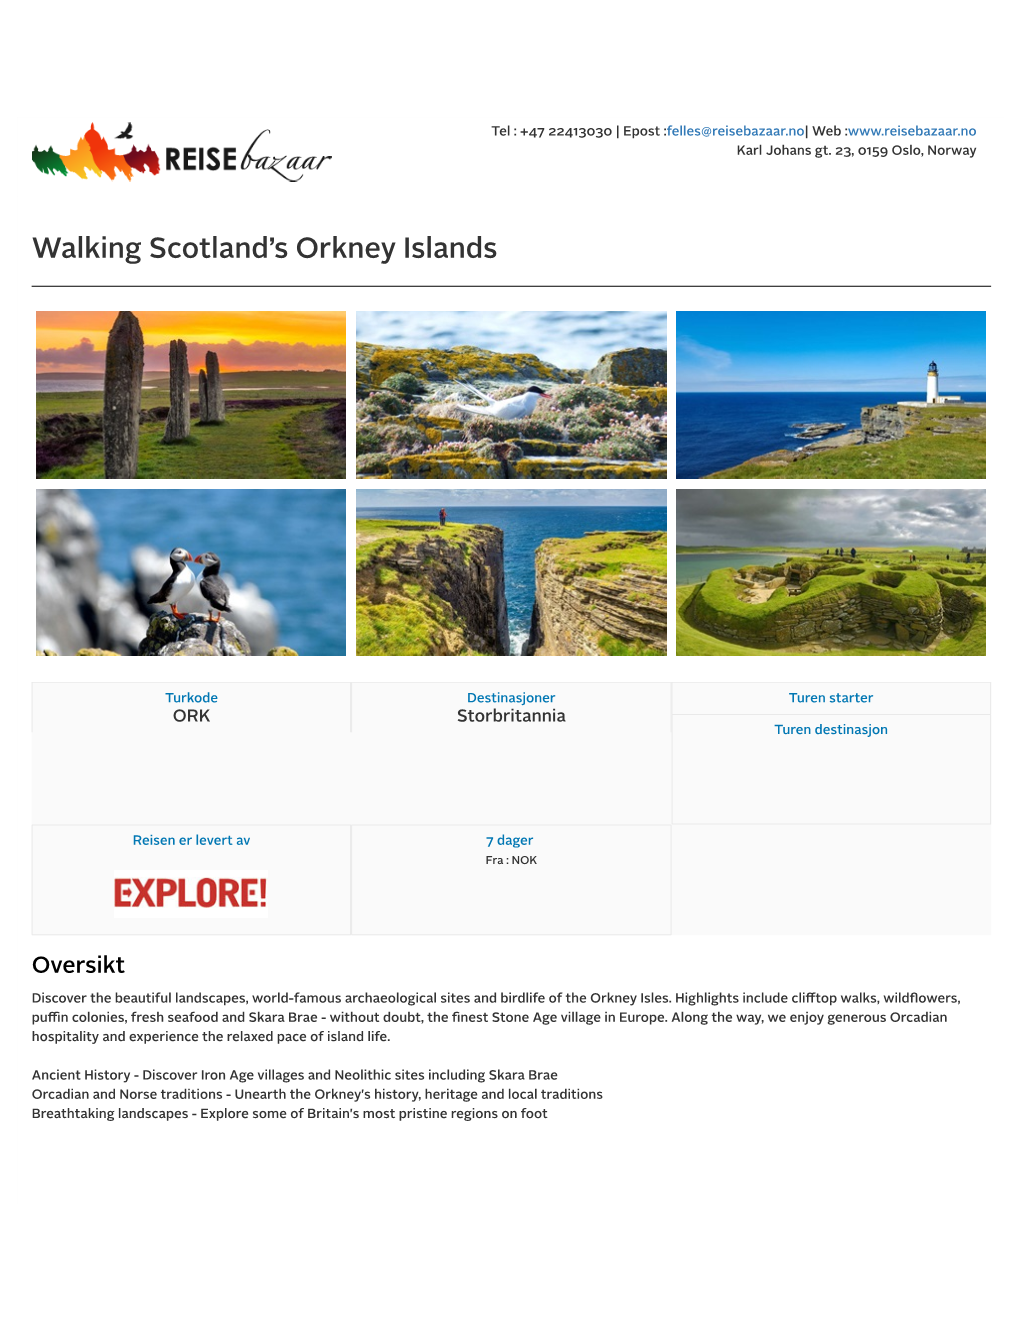 Walking Scotland's Orkney Islands